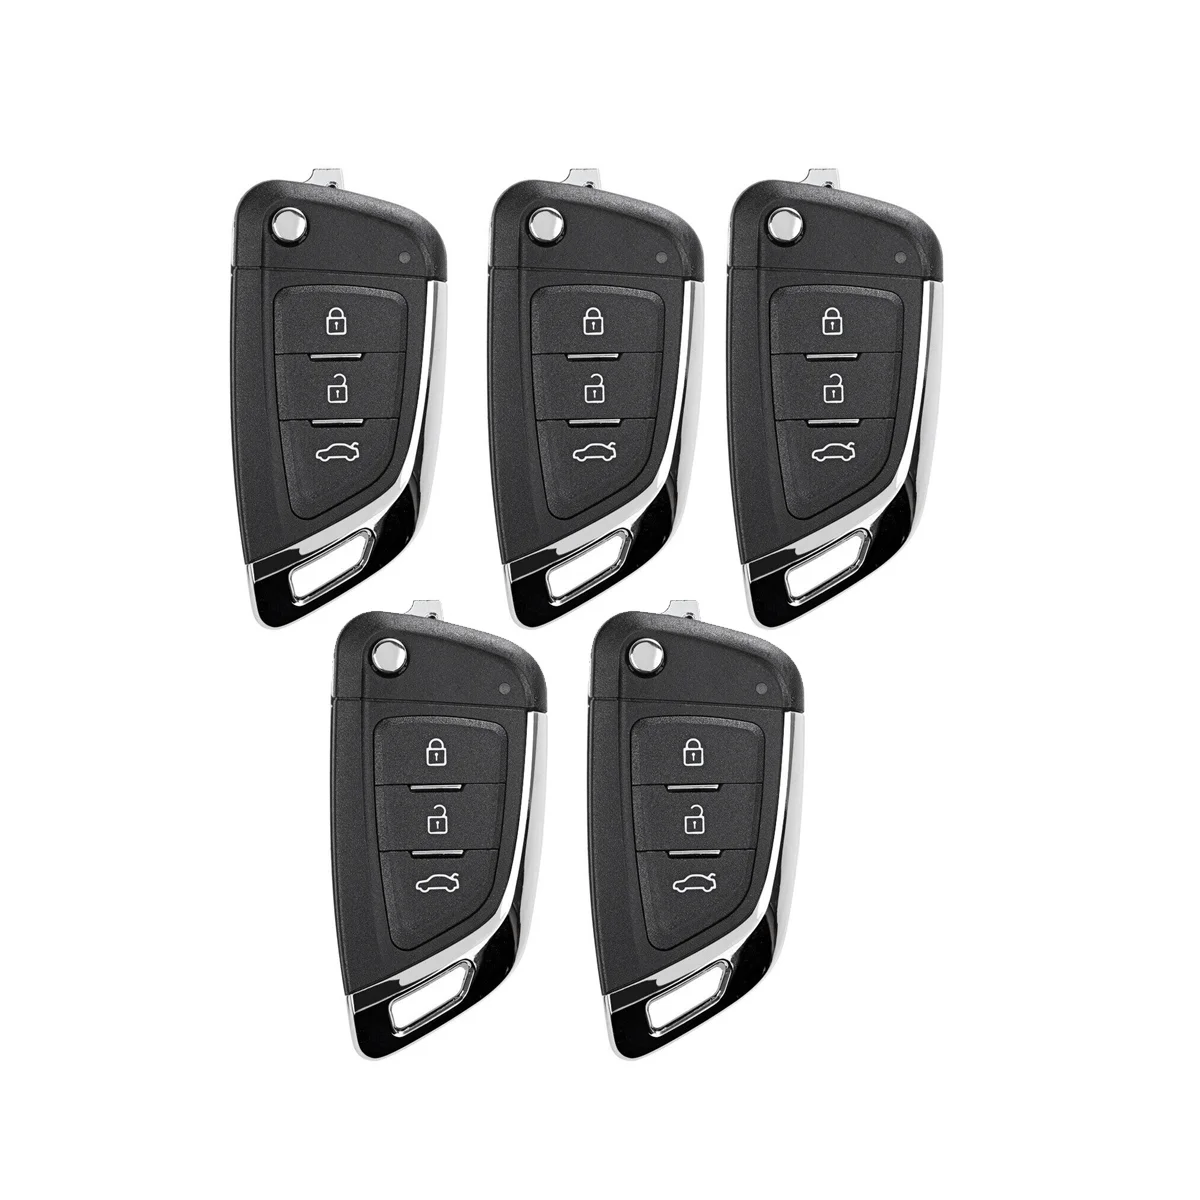 

Брелок для ключей Xhorse XKKF03EN, Универсальный проводной пульт дистанционного управления, флип-брелок с 3 кнопками в стиле Lexus, для ключей VDI, 5 шт./партия